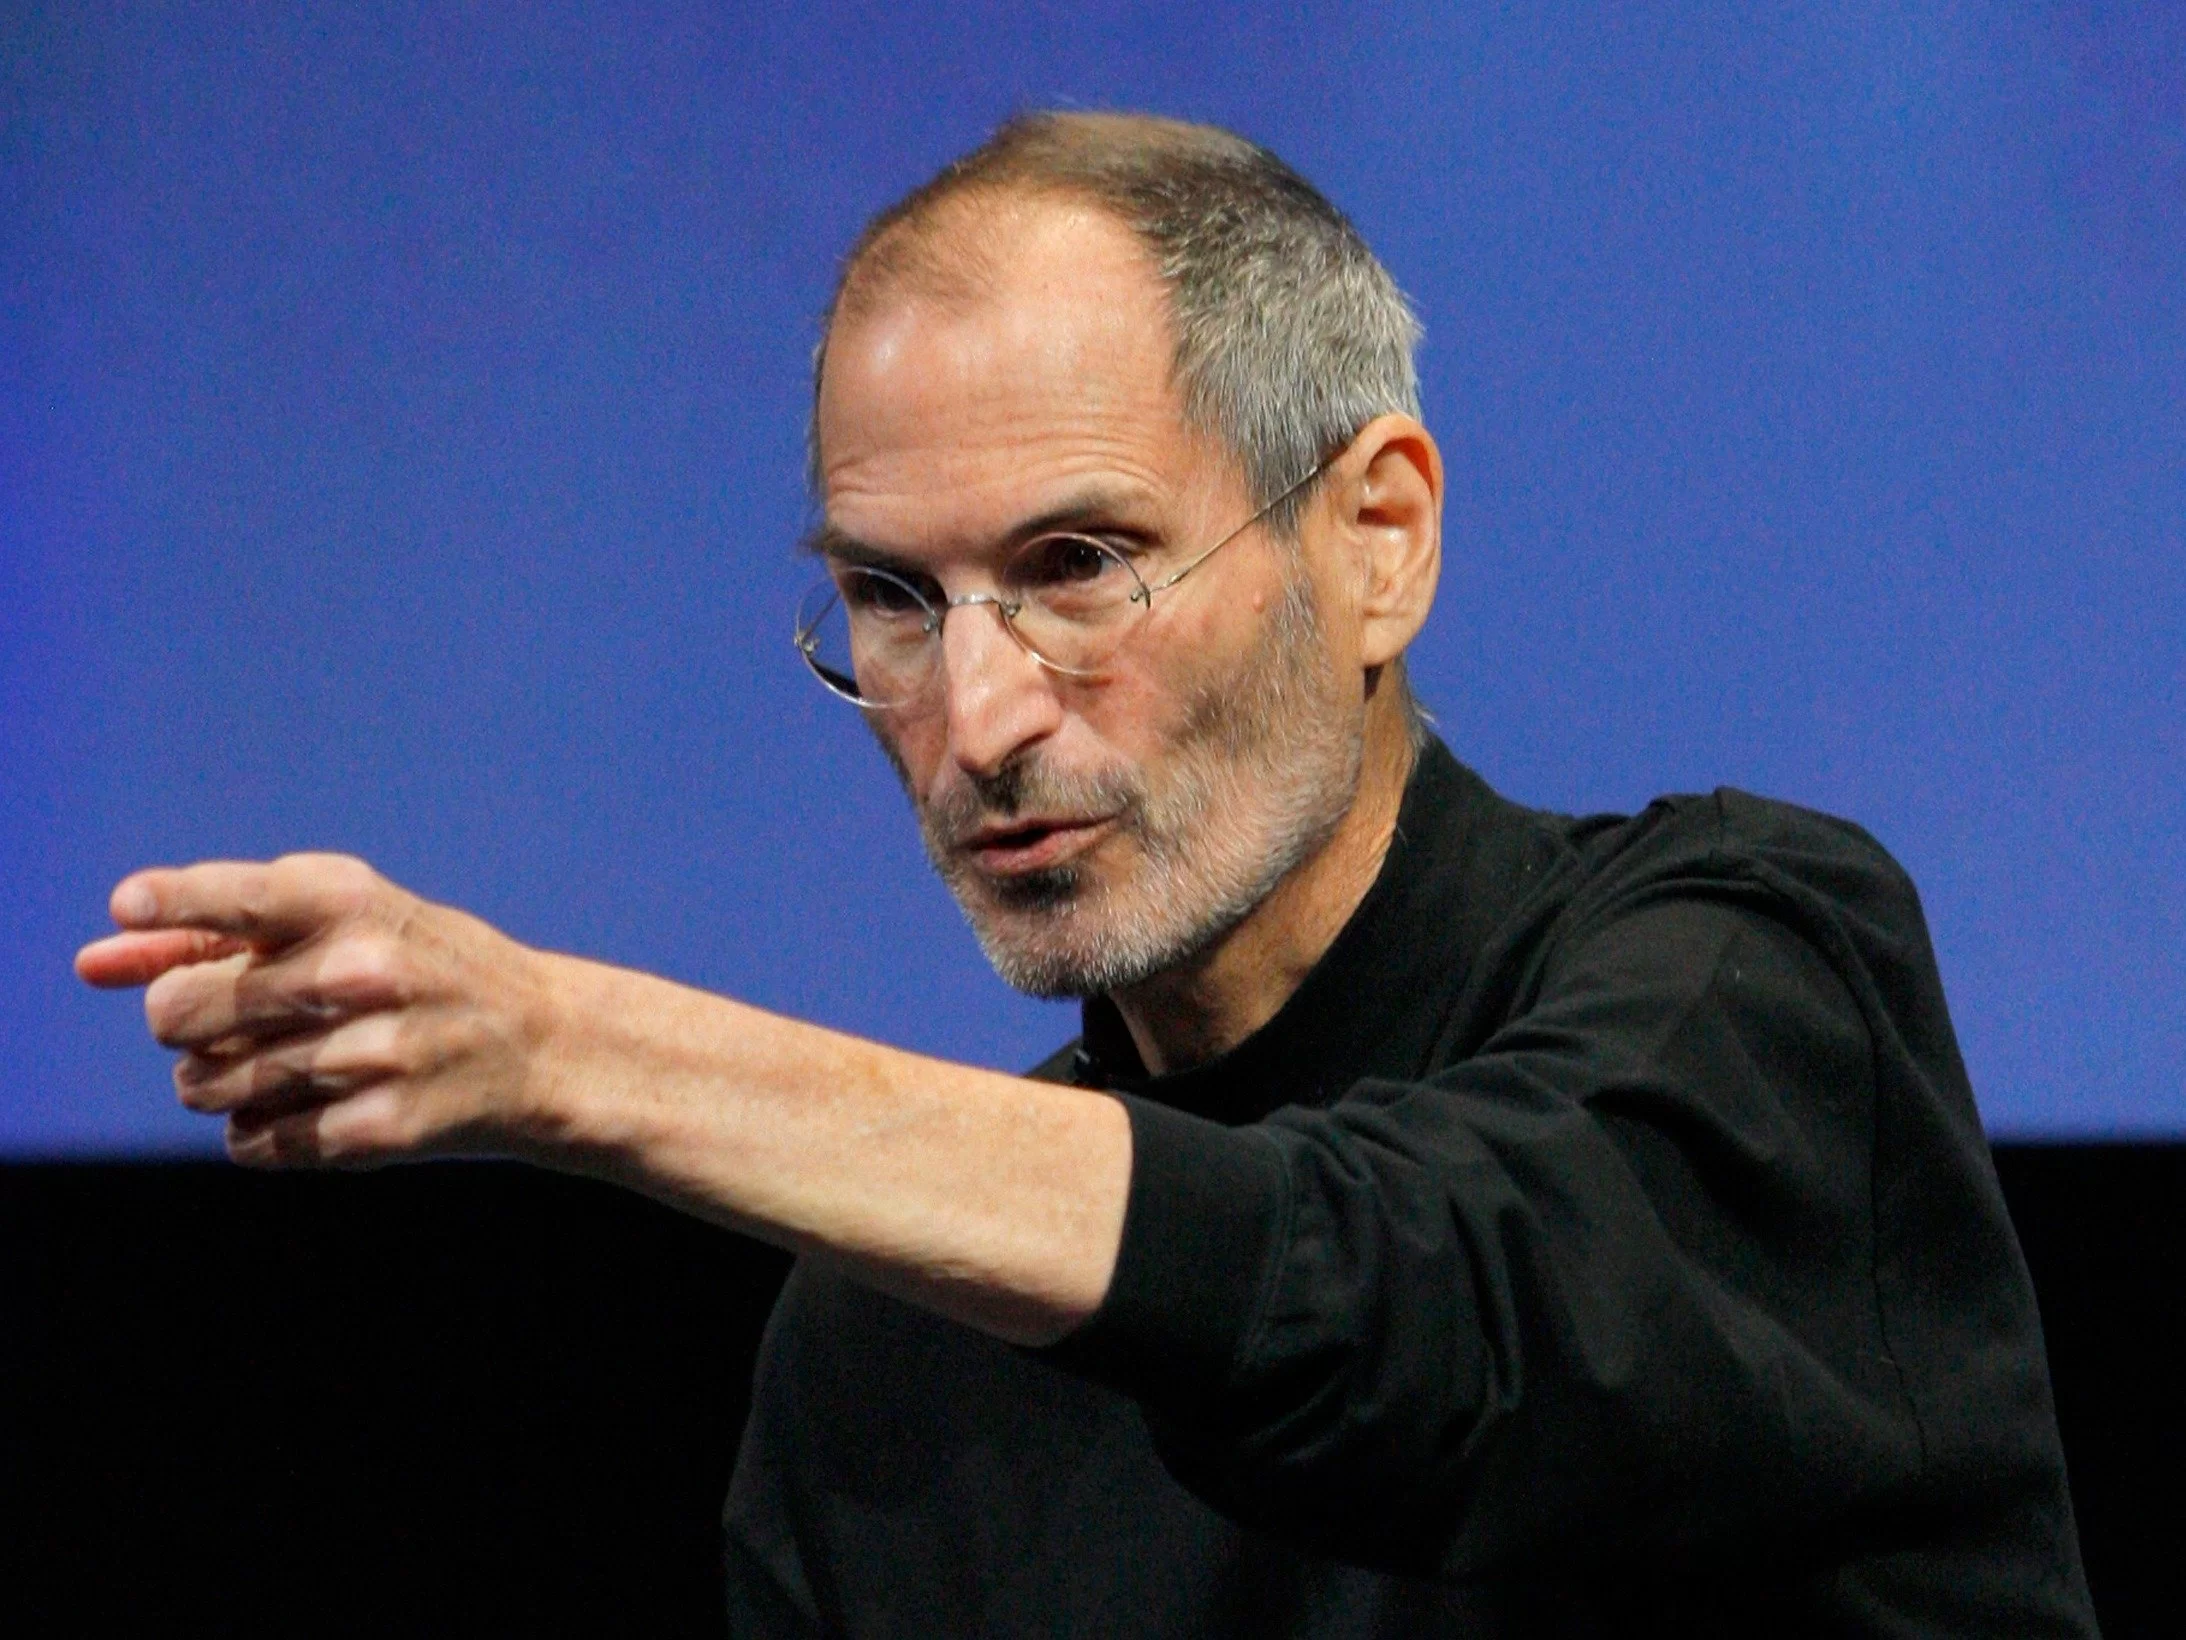 rtr2cktq | CEO | 3 เทคนิคการประชุมดีๆของ Steve Jobs ที่ทำให้บริษัทประสบความสำเร็จ